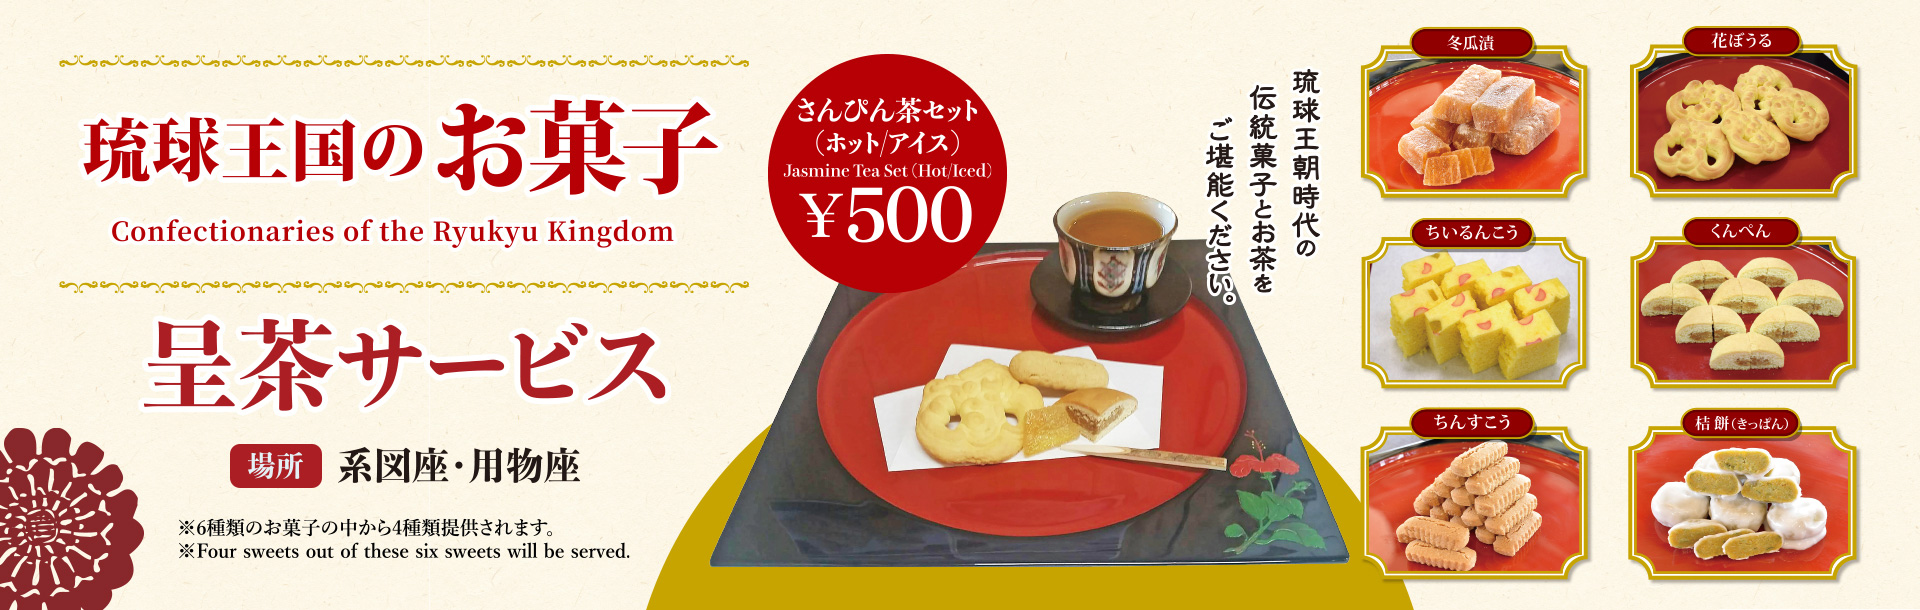 琉球王国のお菓子「呈茶サービス」